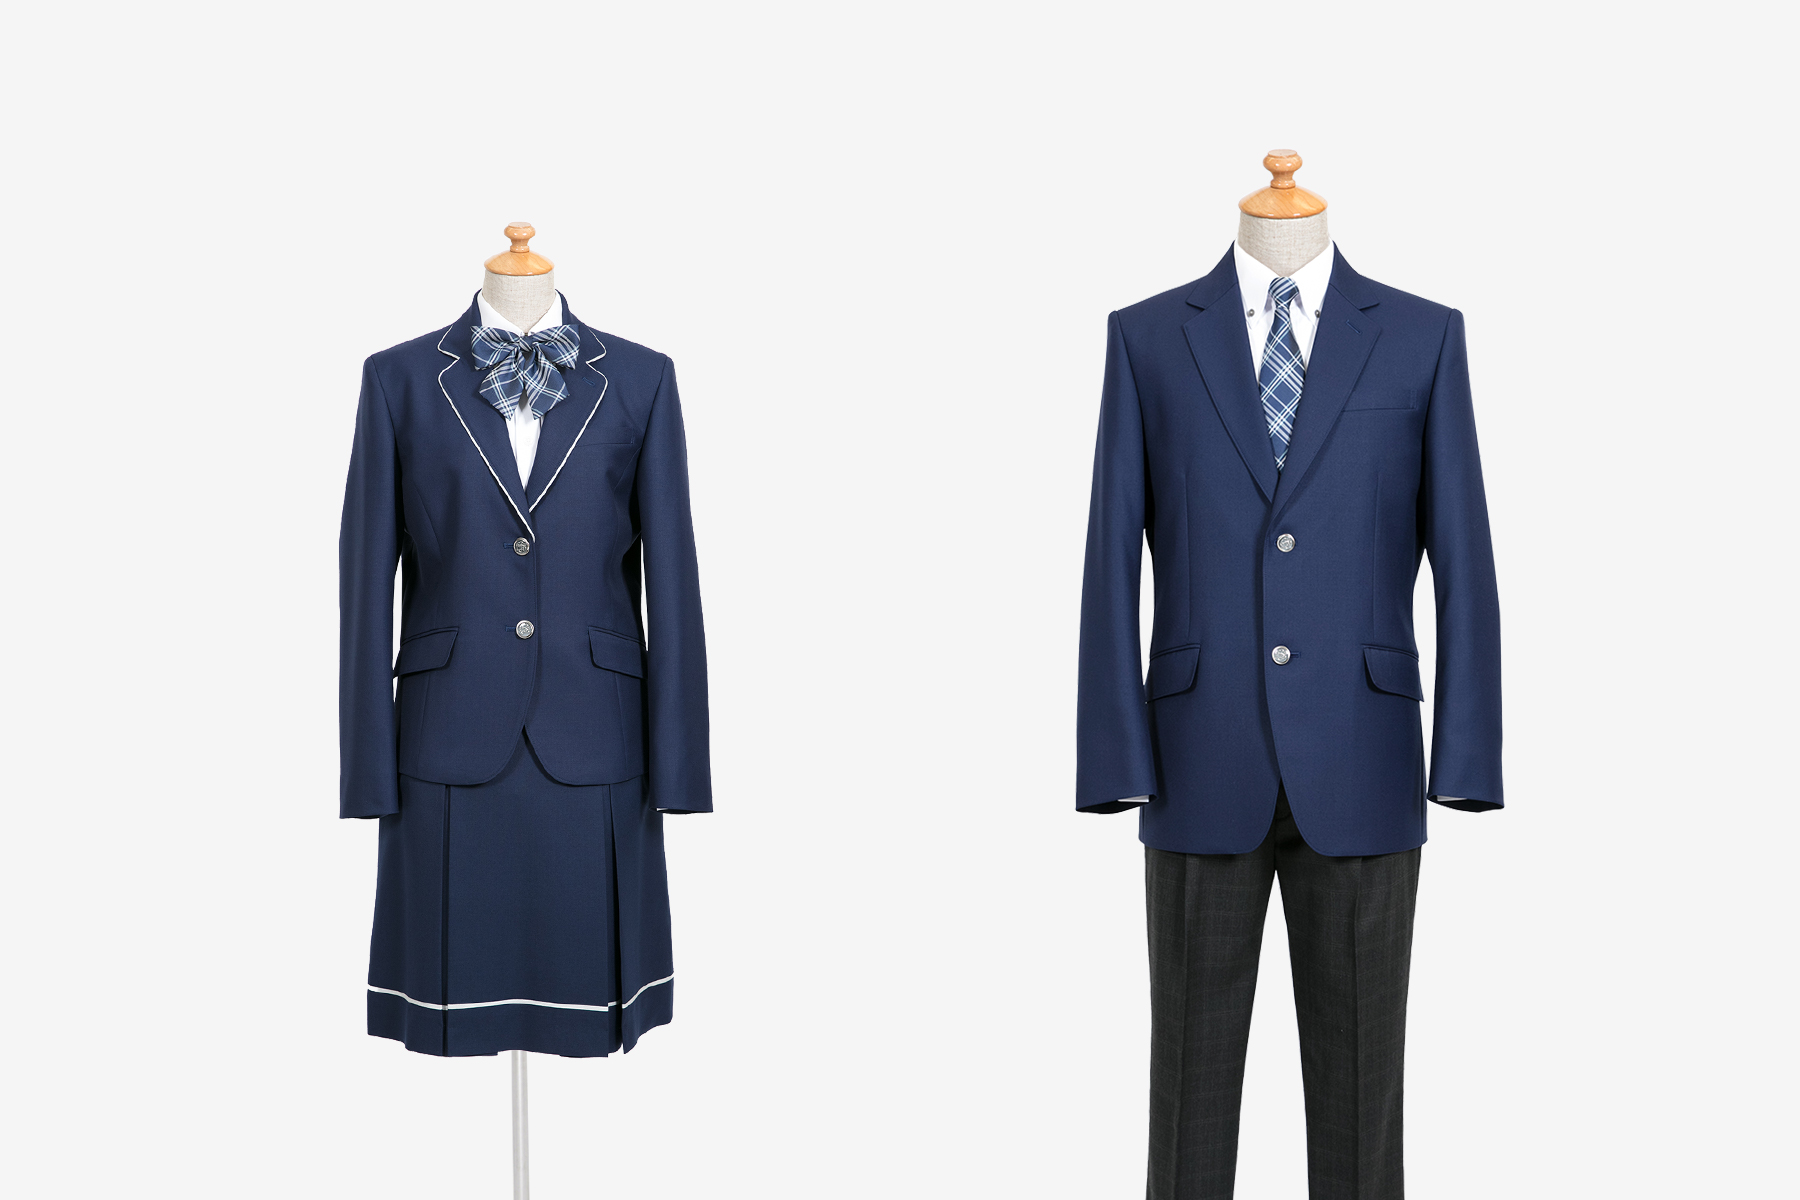 学校制服ブランド O C S D 採用4校の新制服を発表 ニュース オサレカンパニー